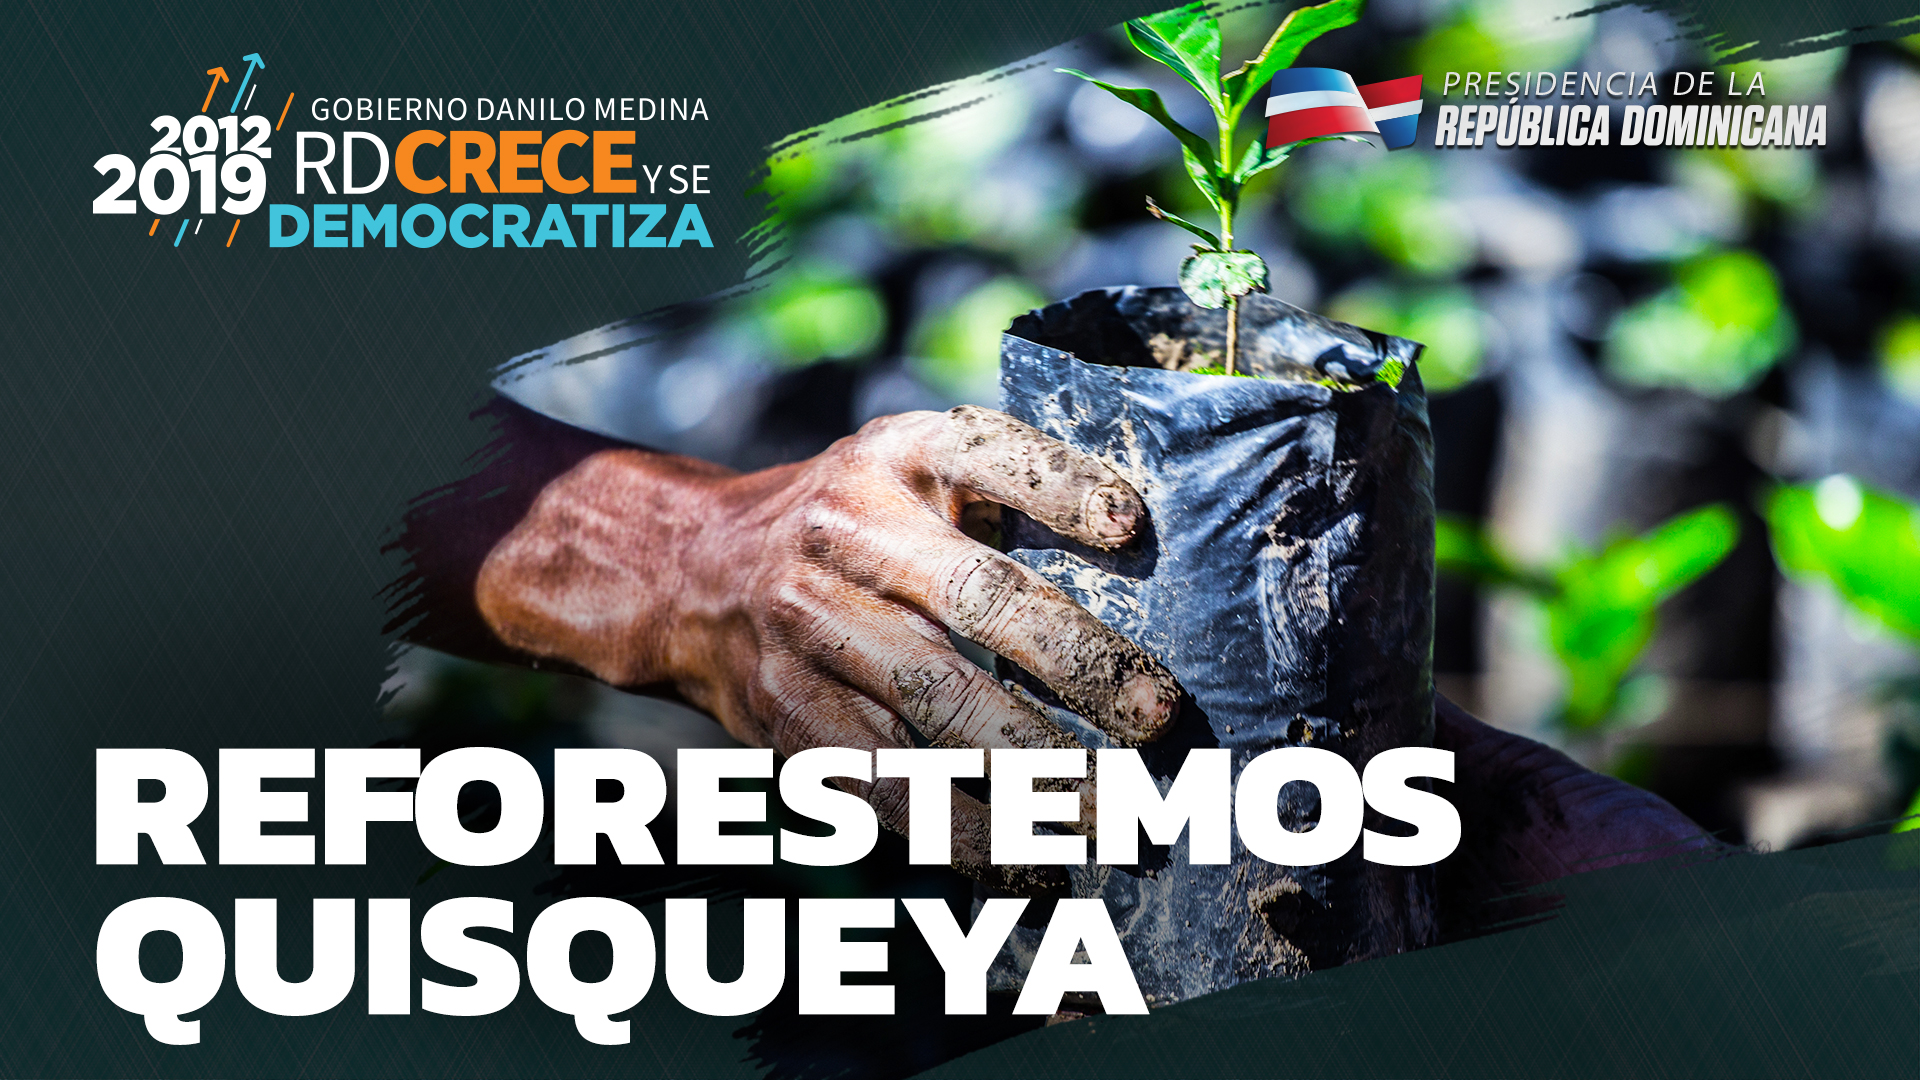 REPÚBLICA DOMINICANA: Familias del Sur pasan de empobrecedora cultura conuquismo a la agricultura sostenible. Reforestan más de 427 mil tareas